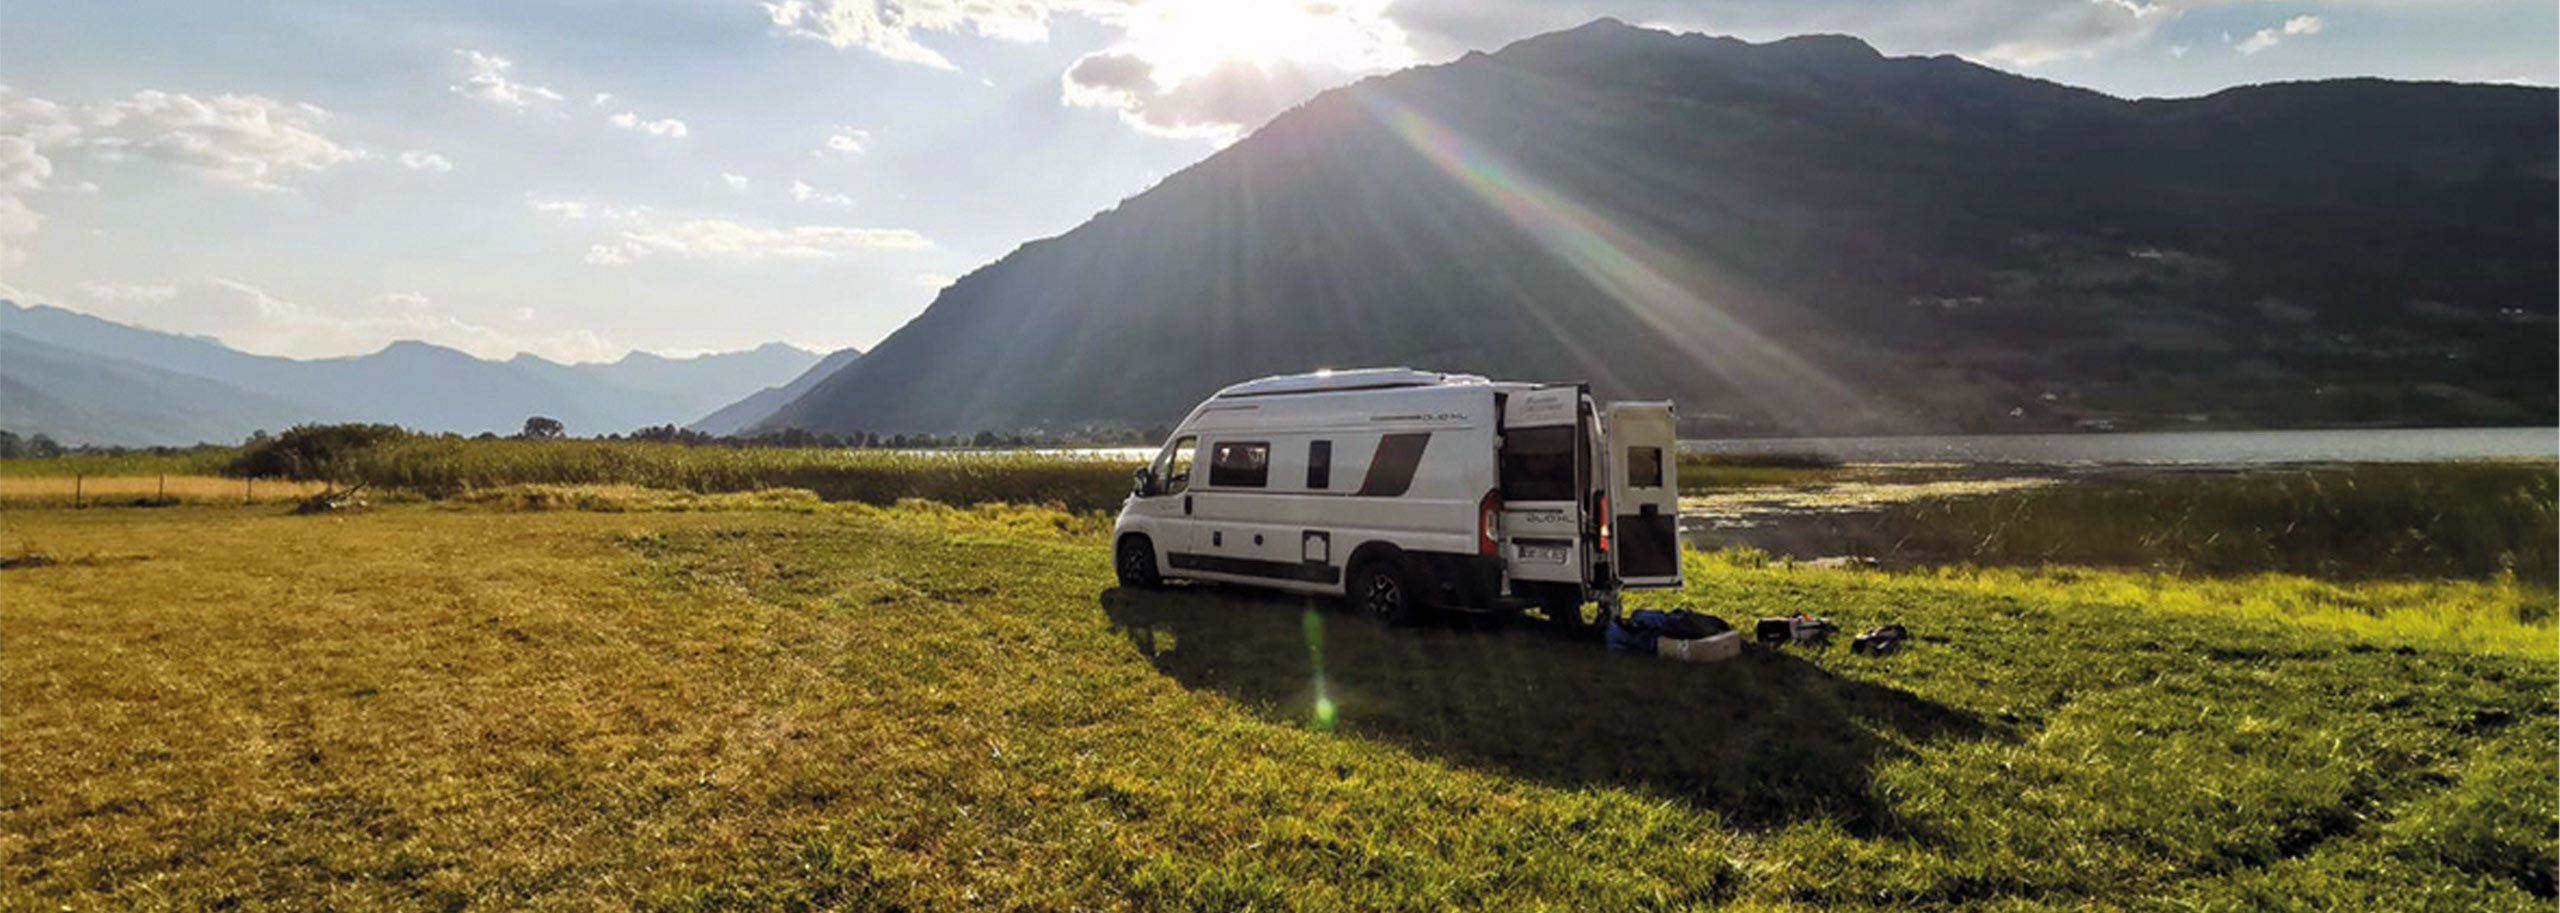 Ein Campervan stehend auf einer freien Wiese im Sonnenlicht vor einem Berg